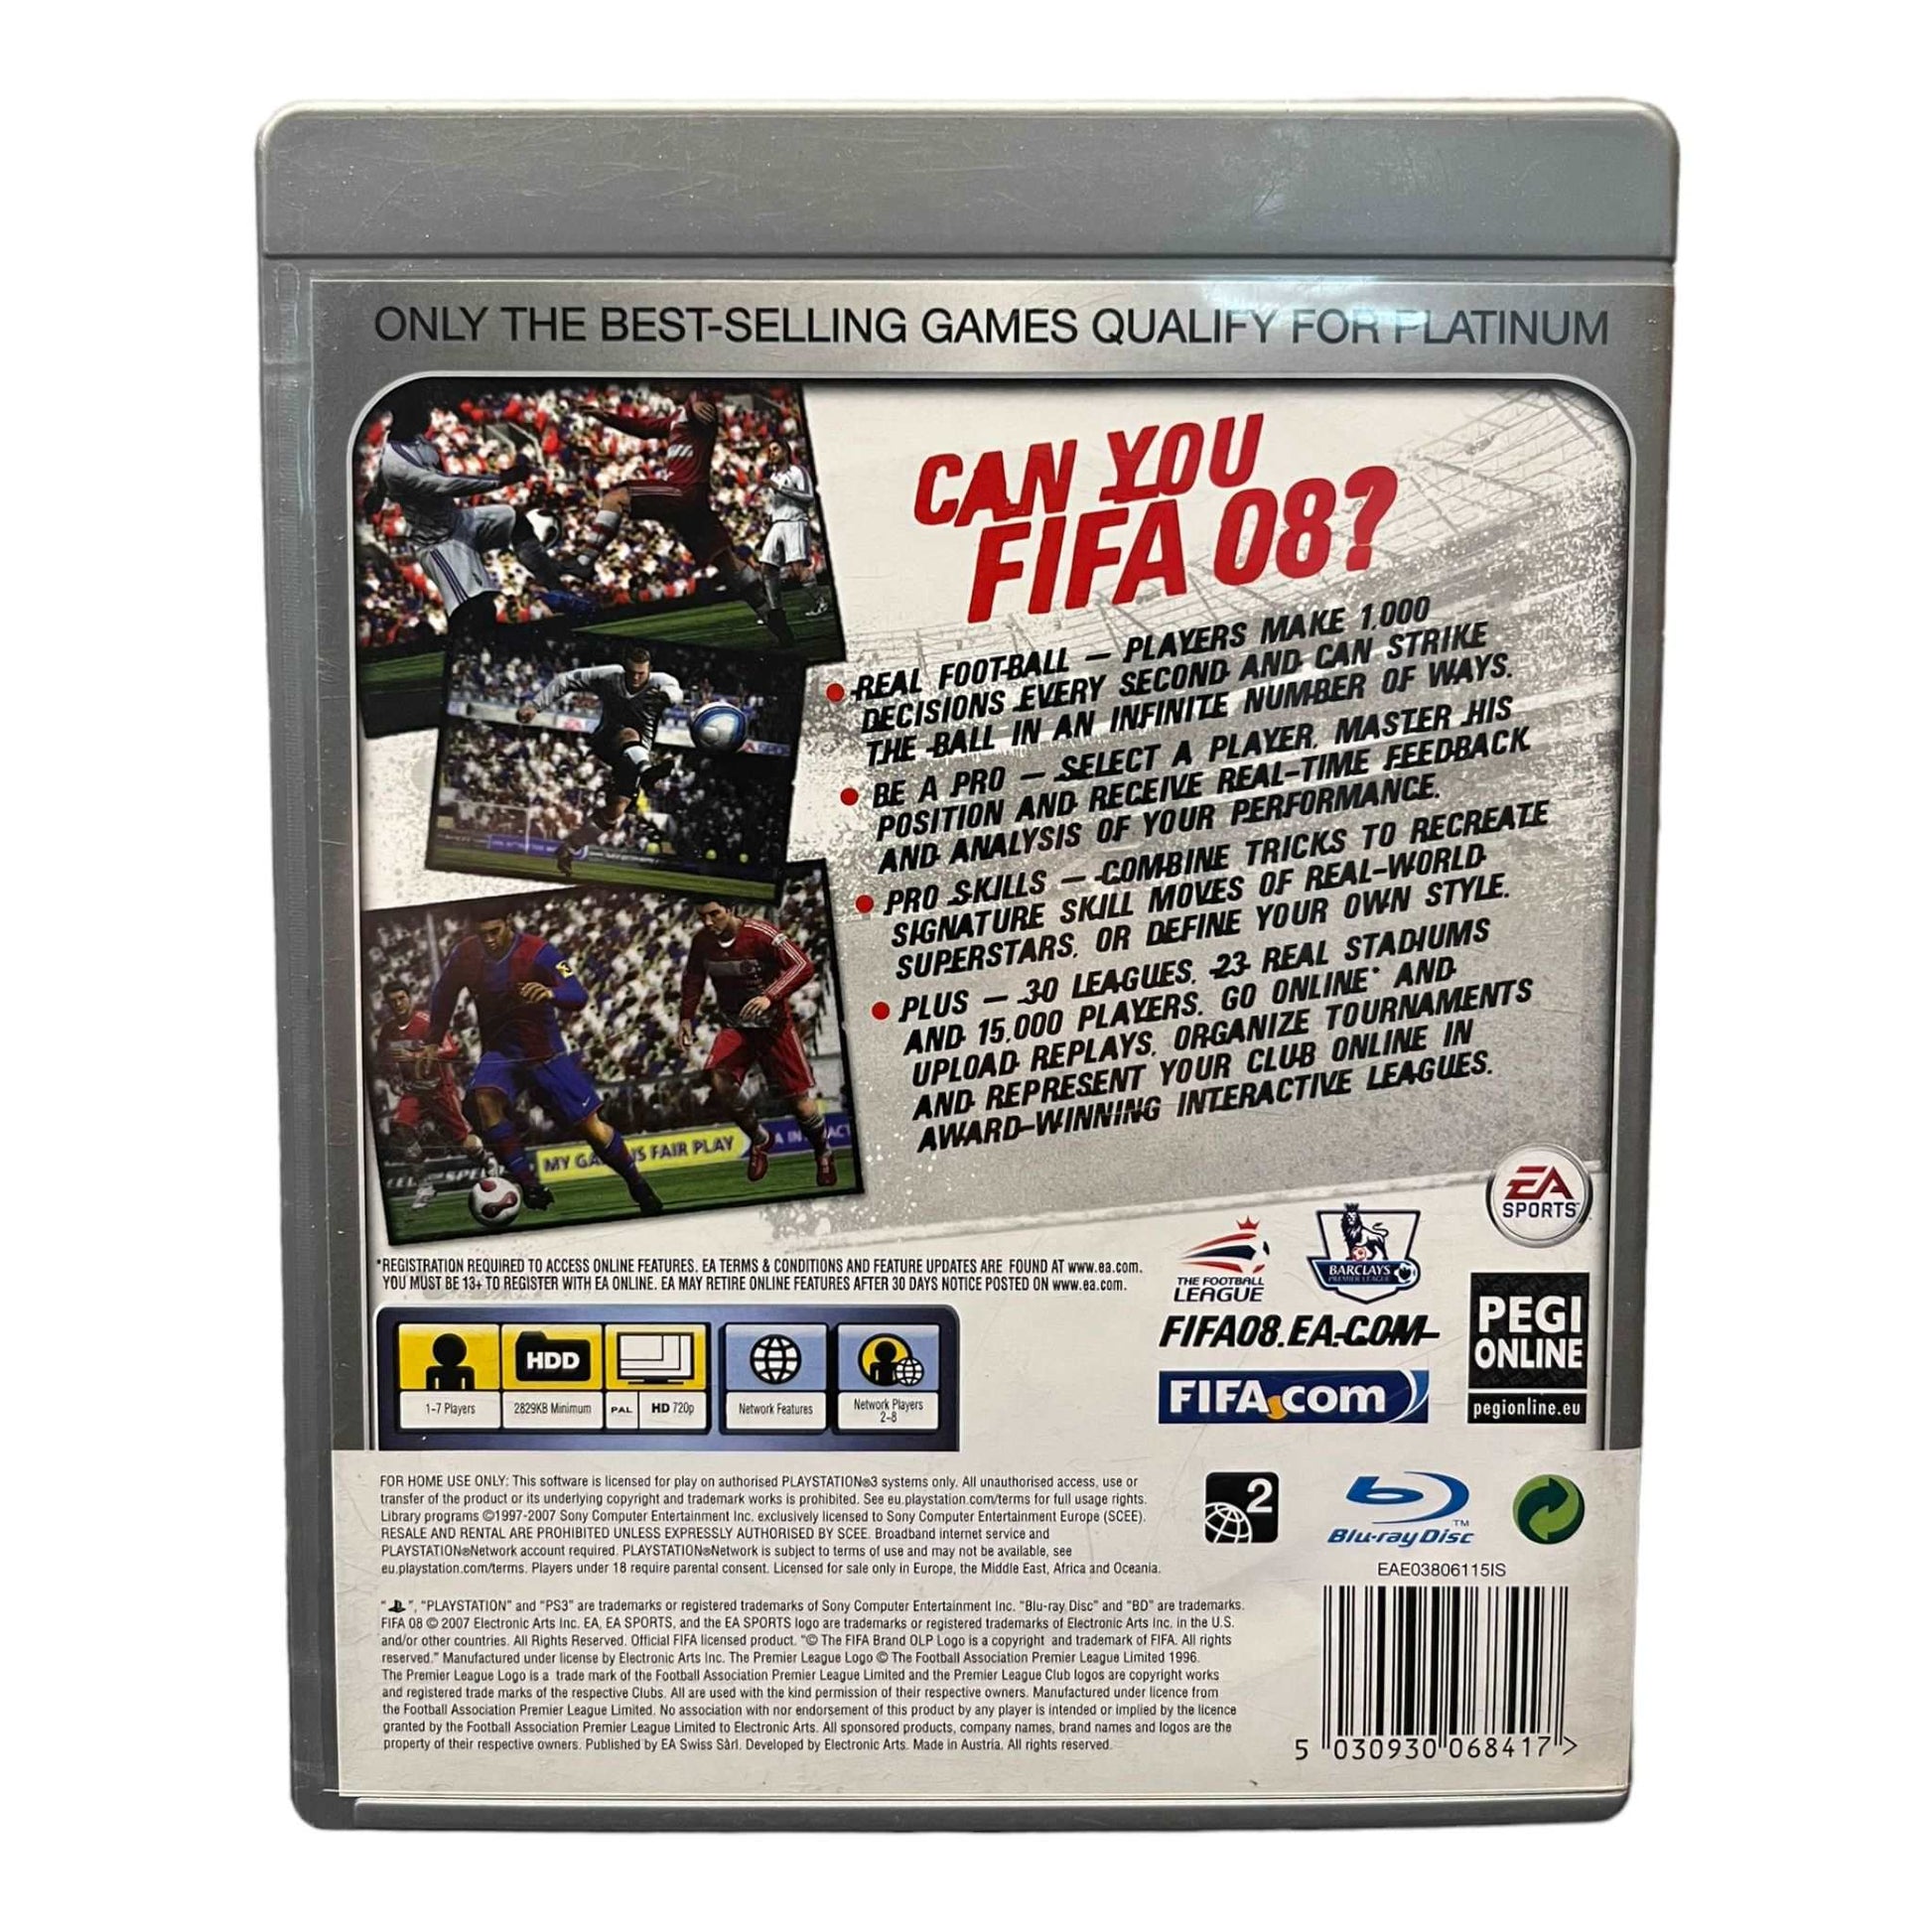 FIFA 08 - PS3 - Platinum